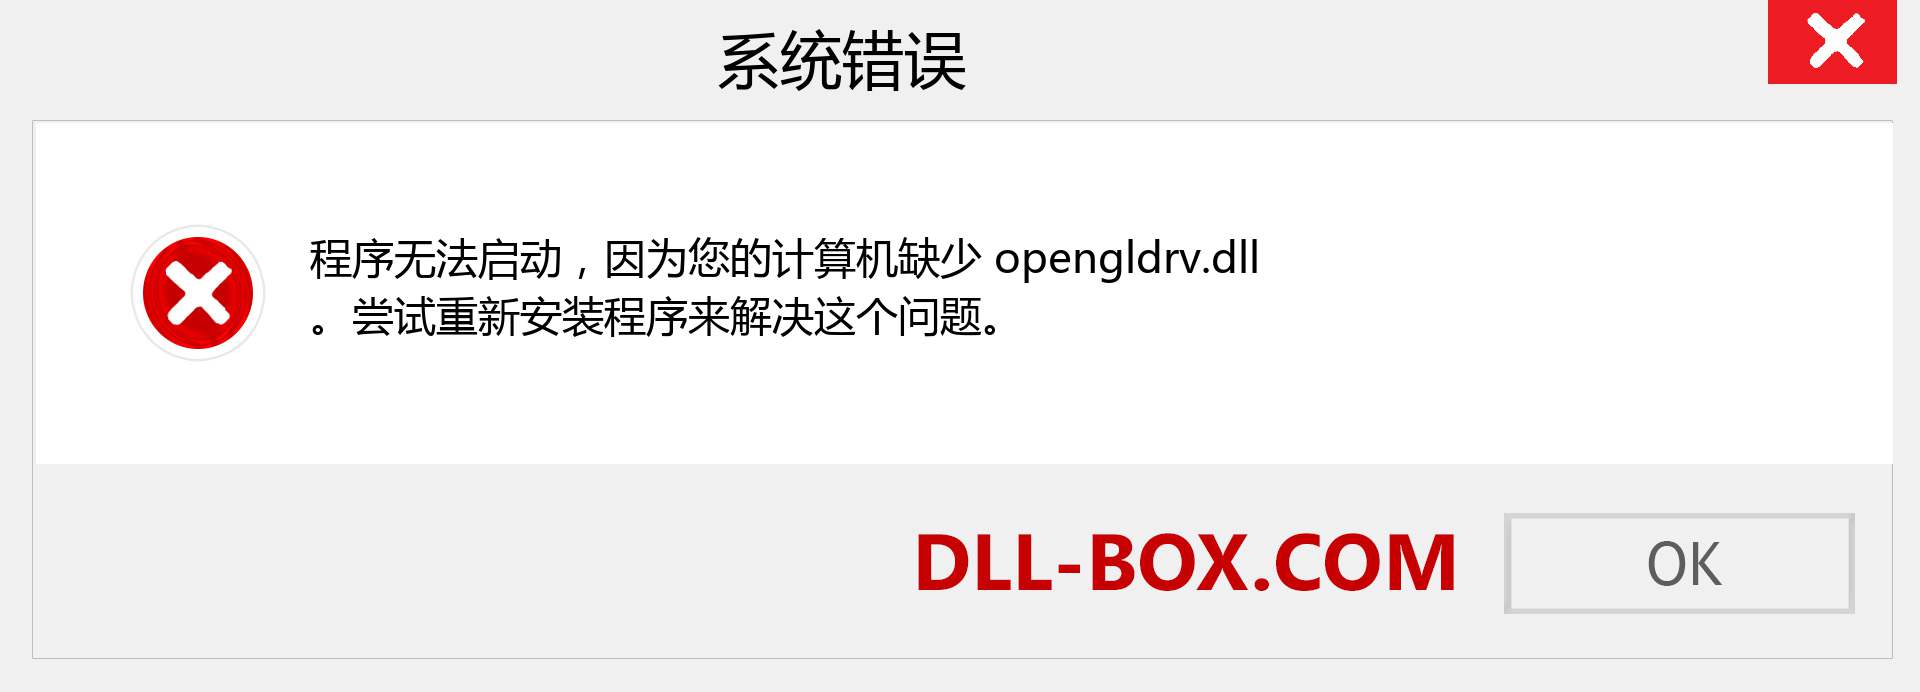 opengldrv.dll 文件丢失？。 适用于 Windows 7、8、10 的下载 - 修复 Windows、照片、图像上的 opengldrv dll 丢失错误